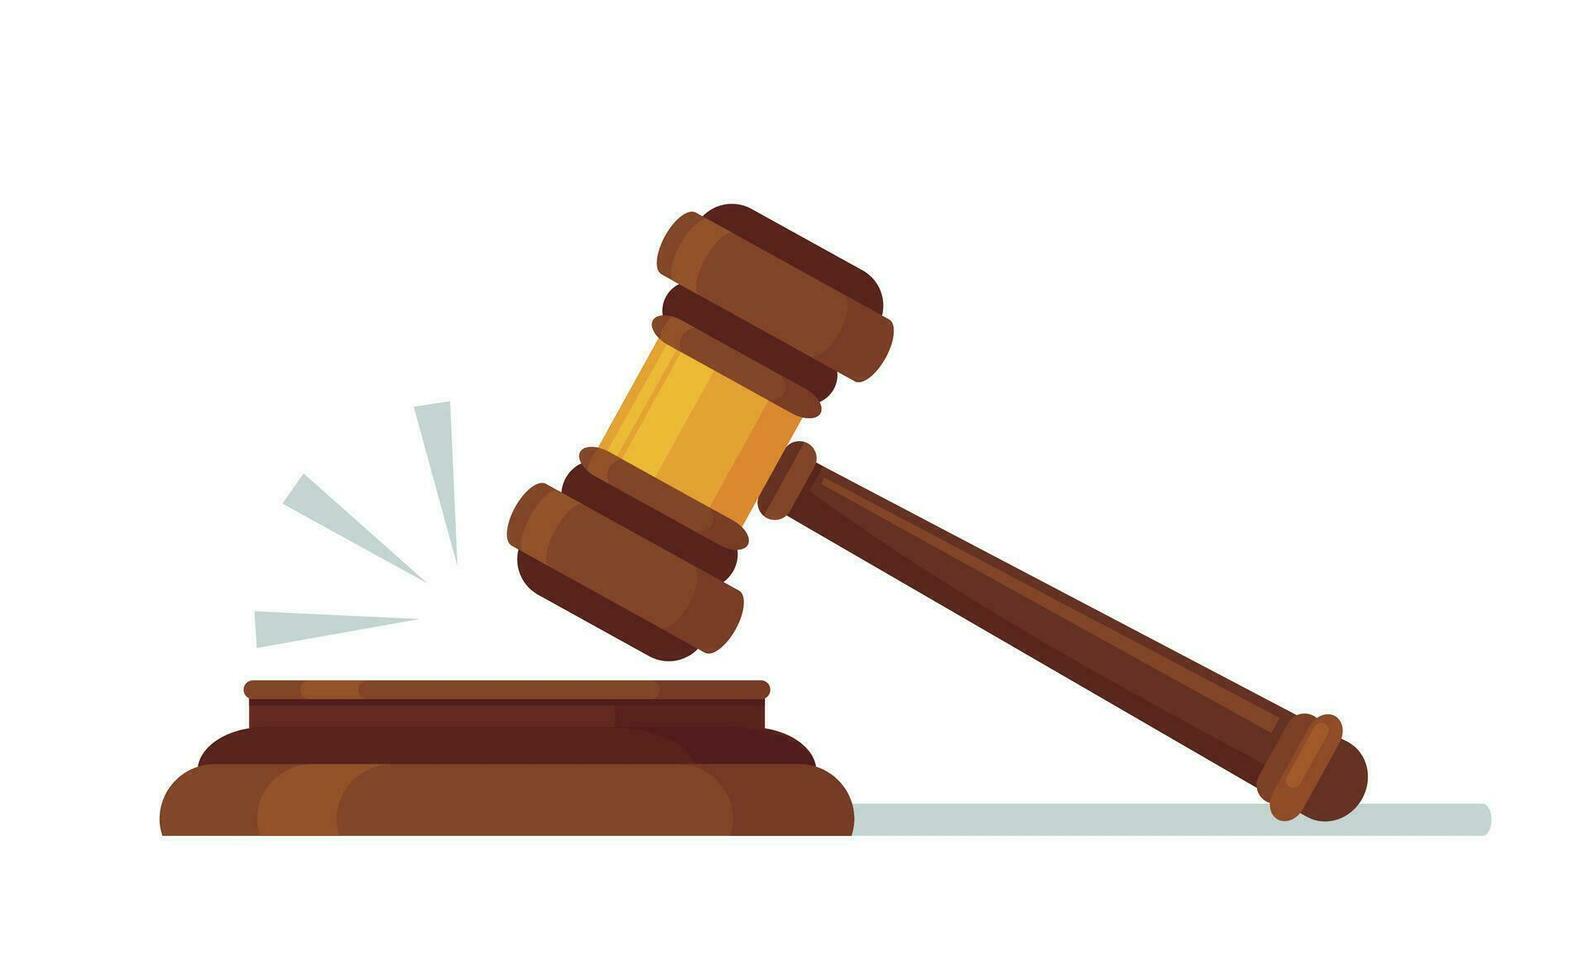 jueces de madera martillo. judicial decisión, martillo soplar para regla de ley y juzgado por leyes concepto dibujos animados vector ilustración